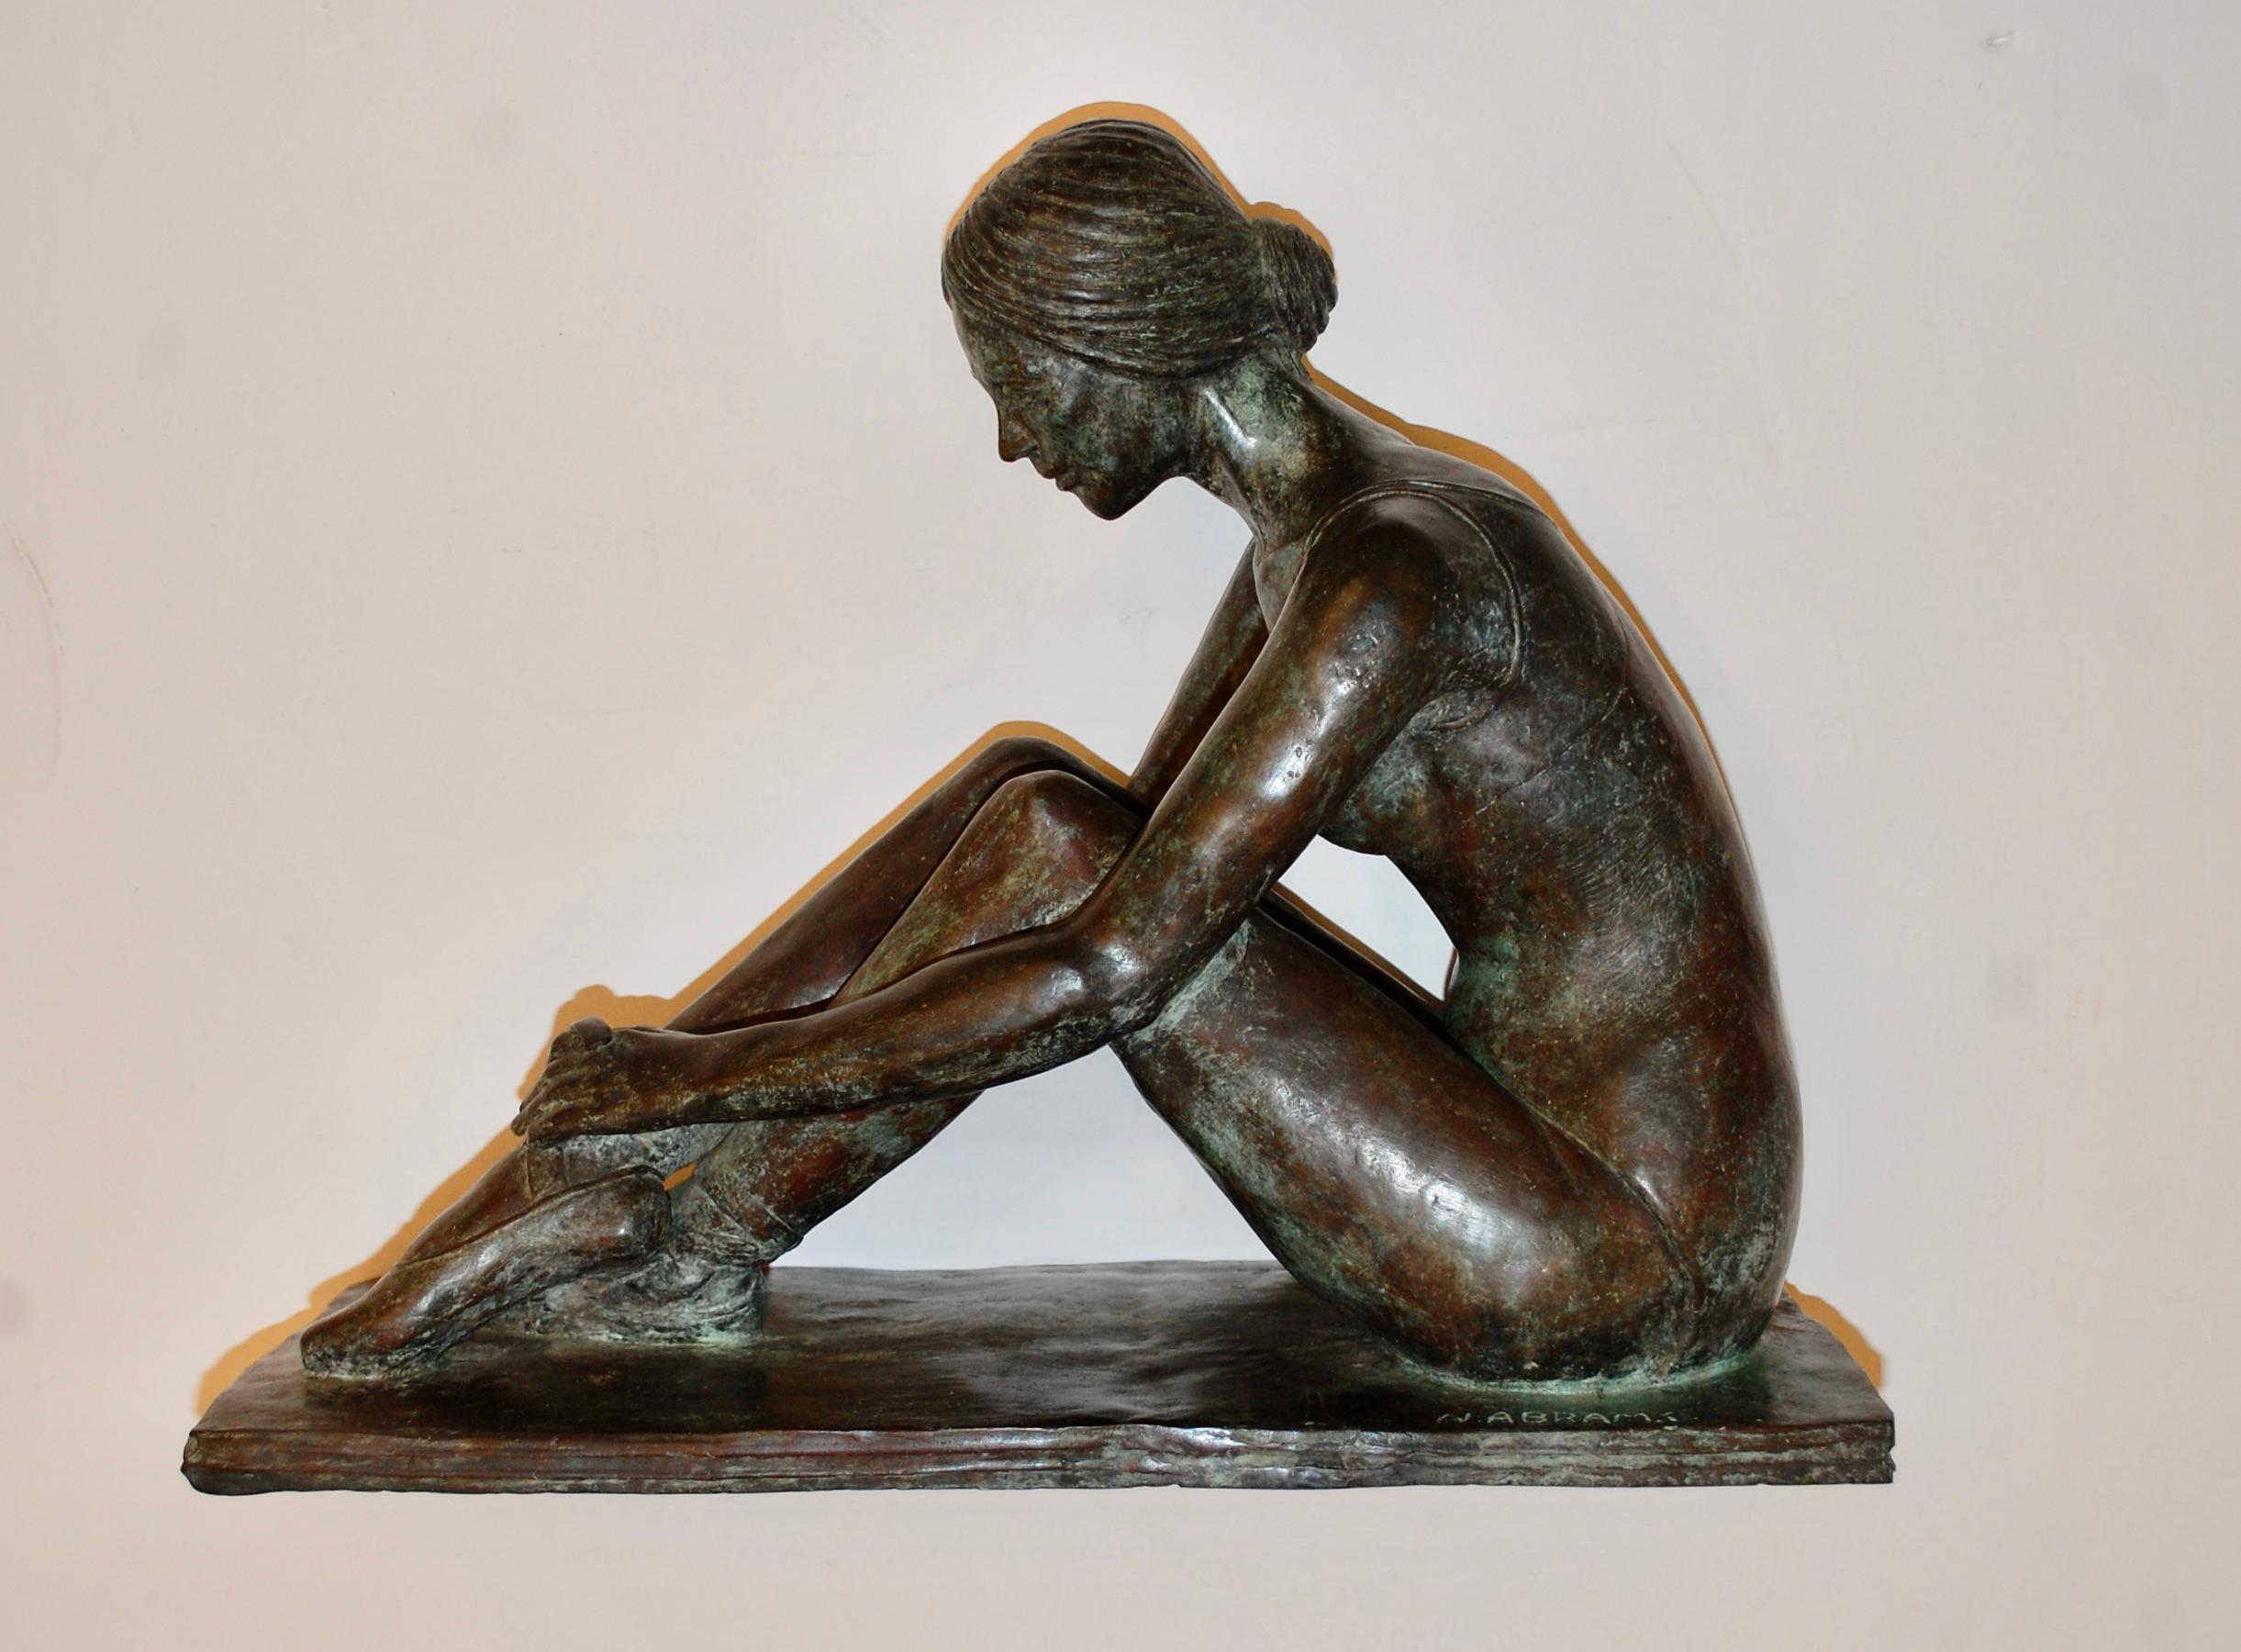  Ballerina Tying Schuh Bronze-Skulptur (Gold), Figurative Sculpture, von N. Abrams